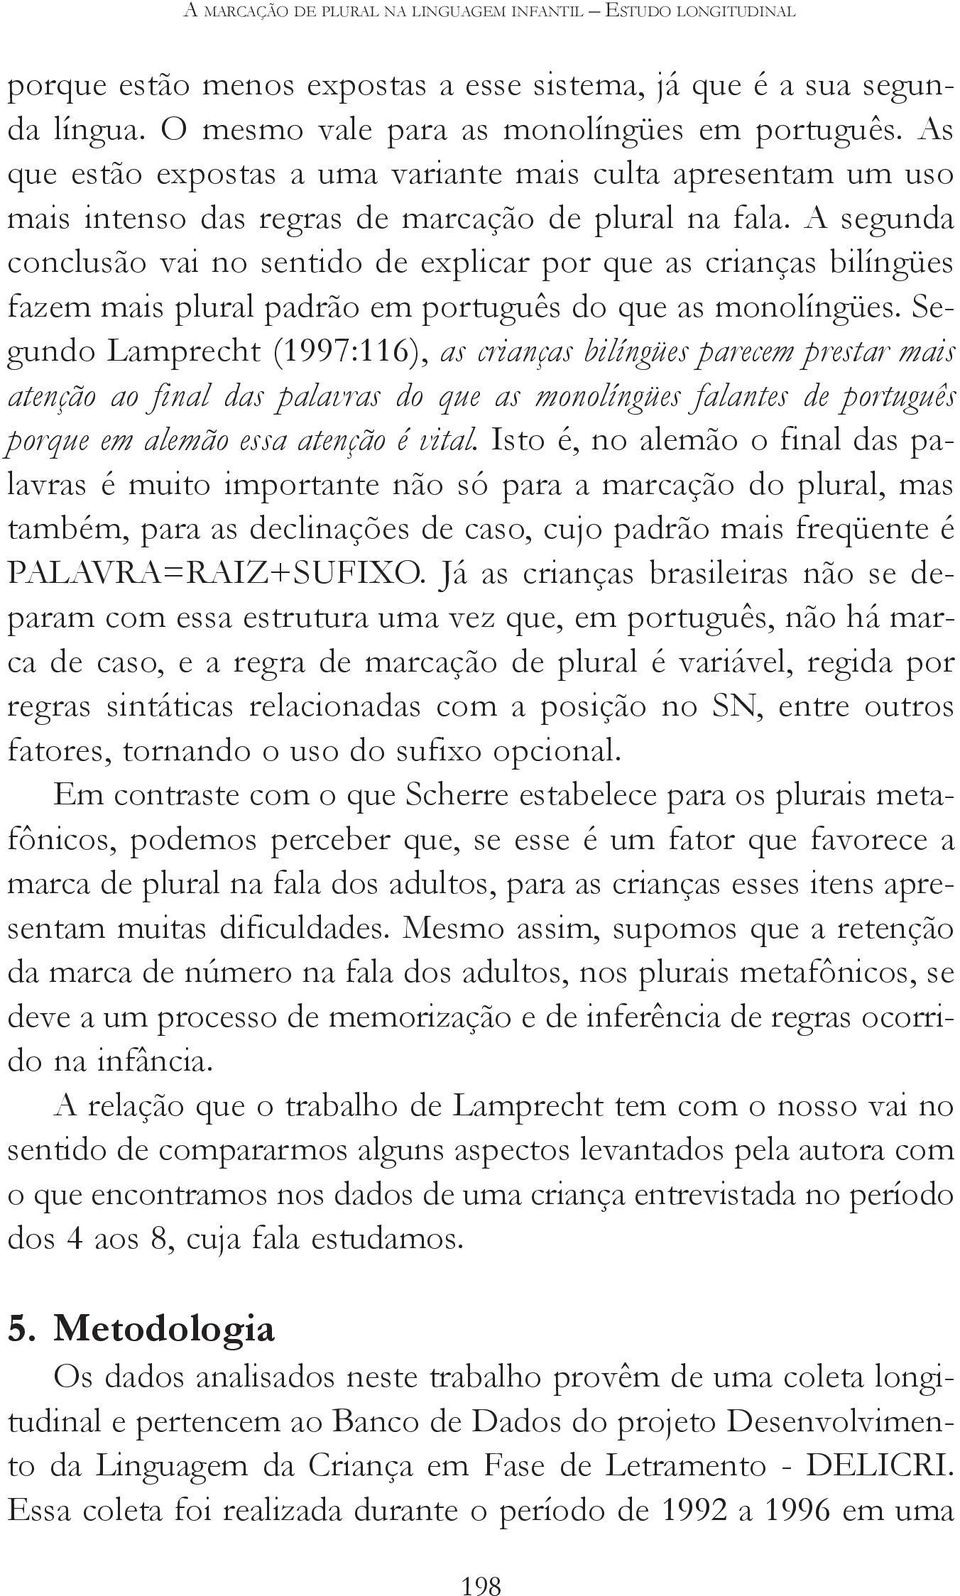 A segunda conclusão vai no sentido de explicar por que as crianças bilíngües fazem mais plural padrão em português do que as monolíngües.